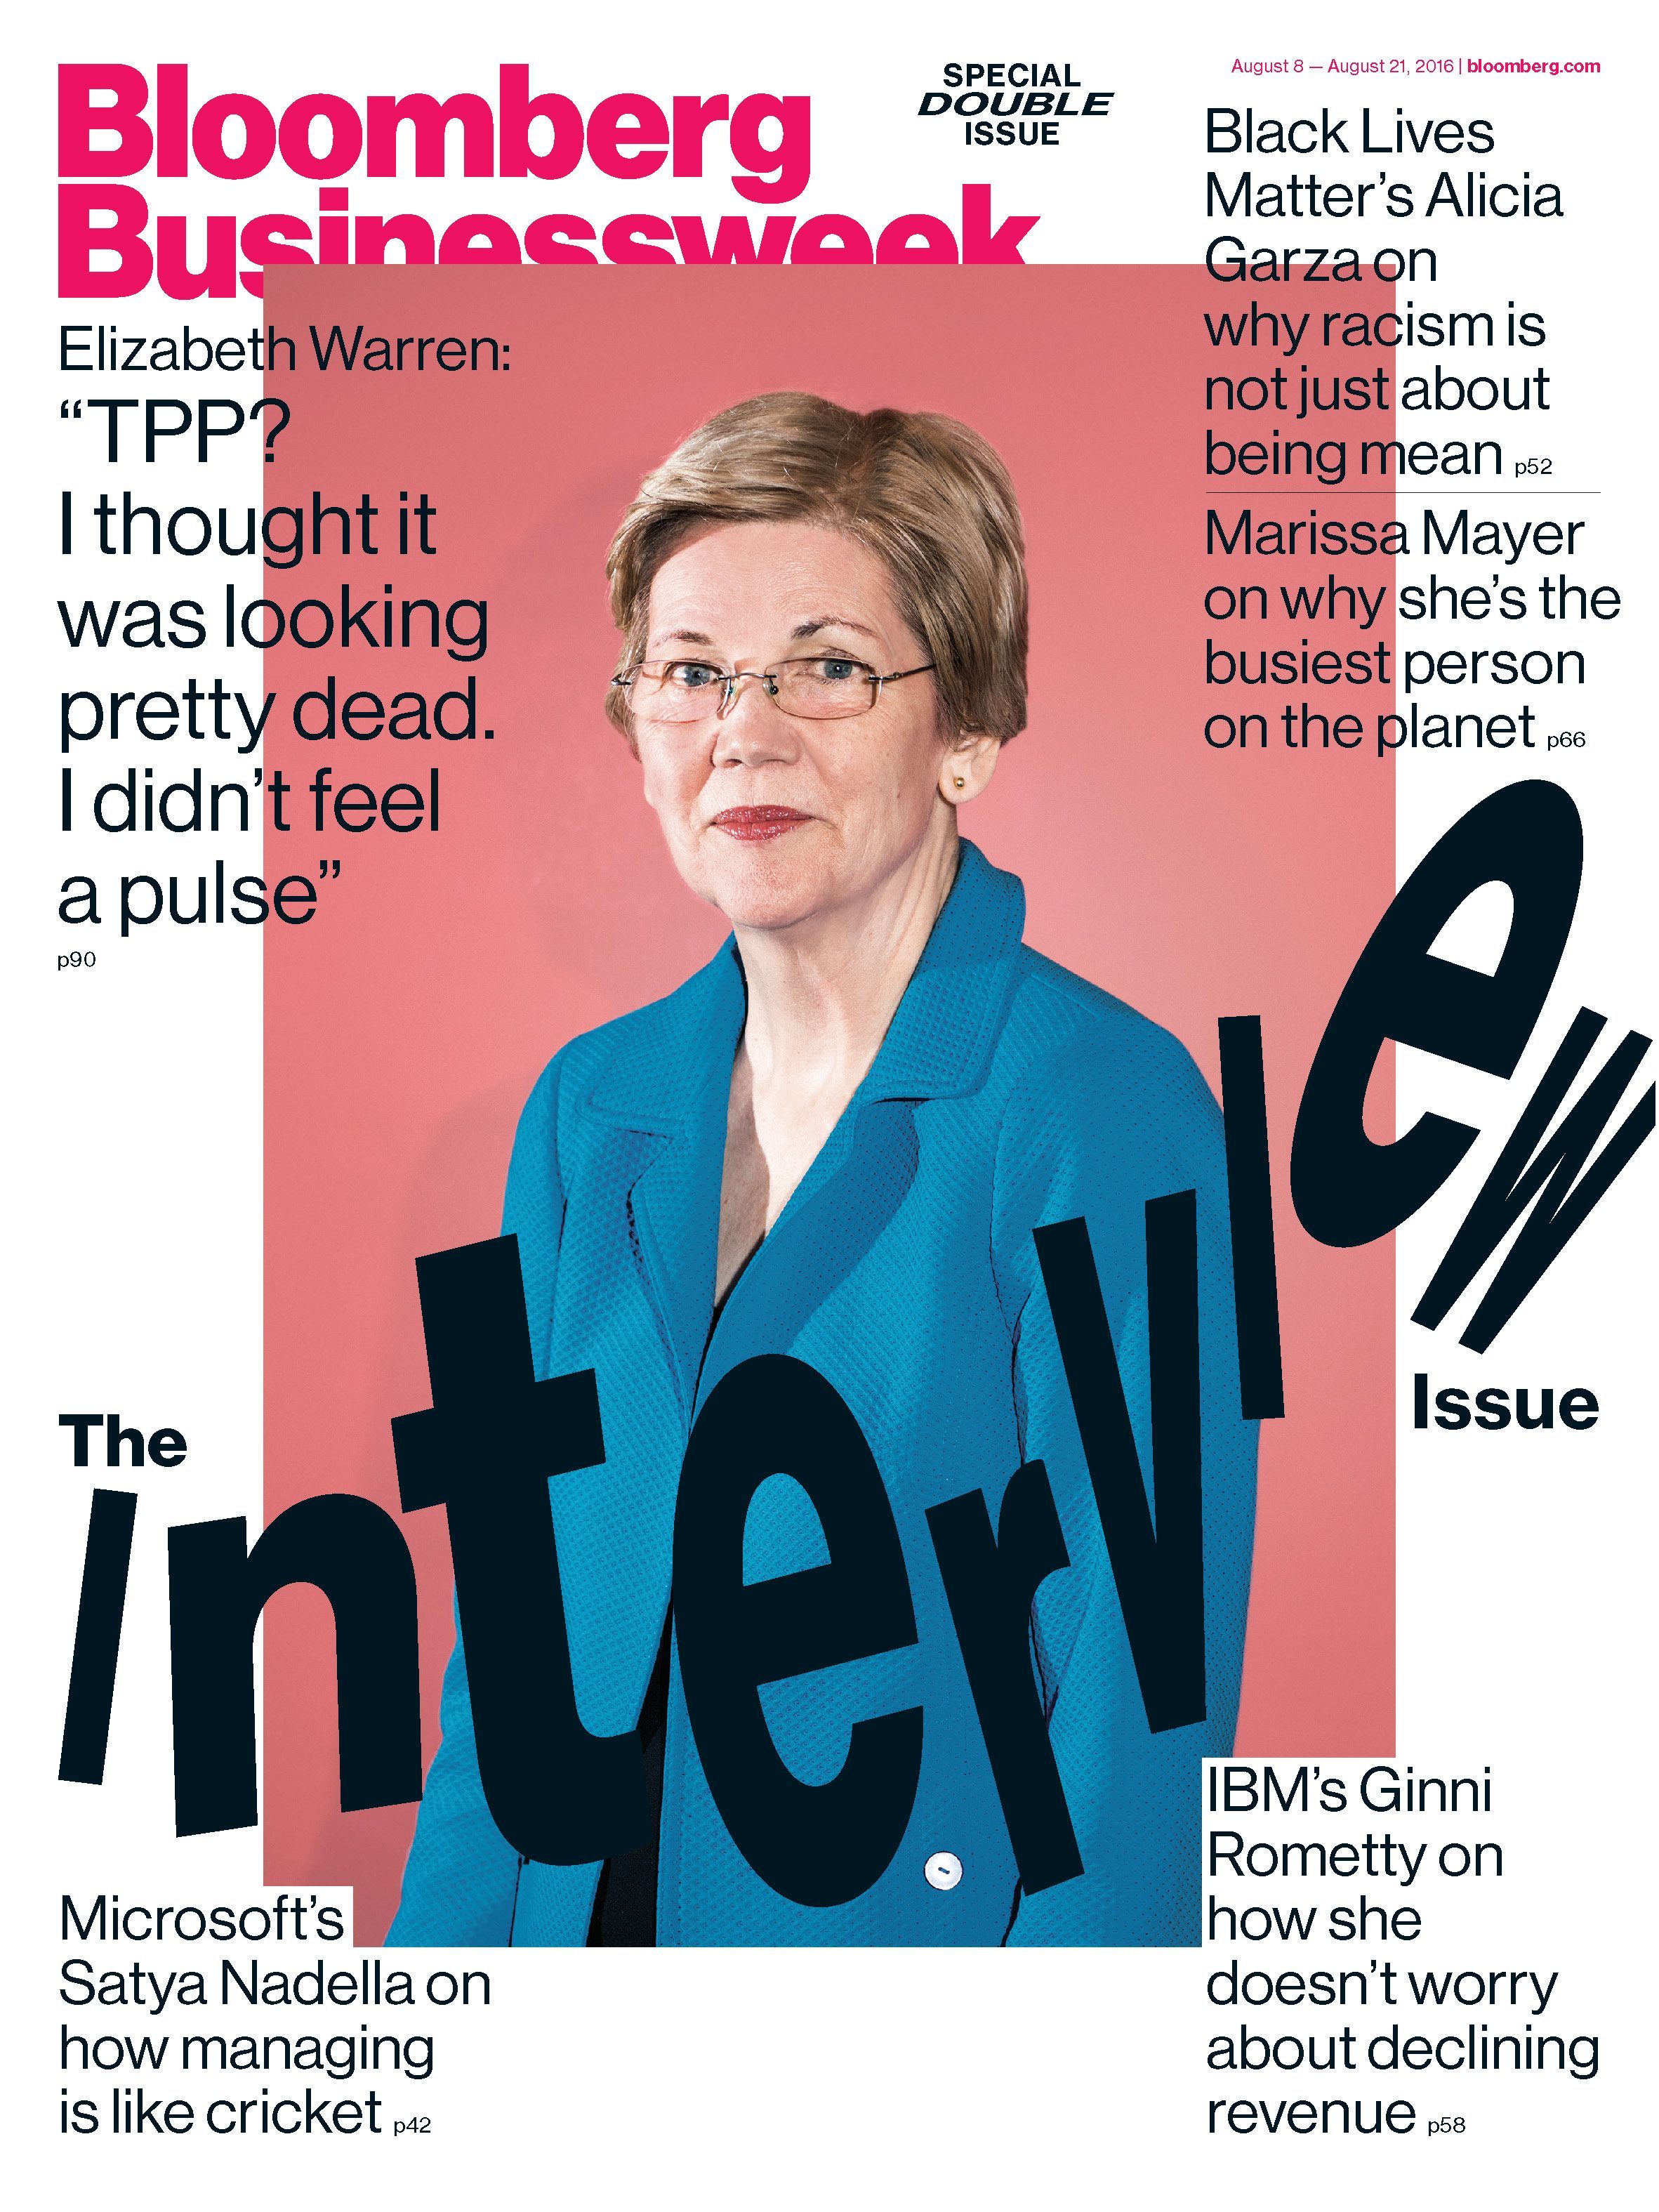 Bloomberg Businessweek Magazine Interview Issue with Elizabeth Warren 2016